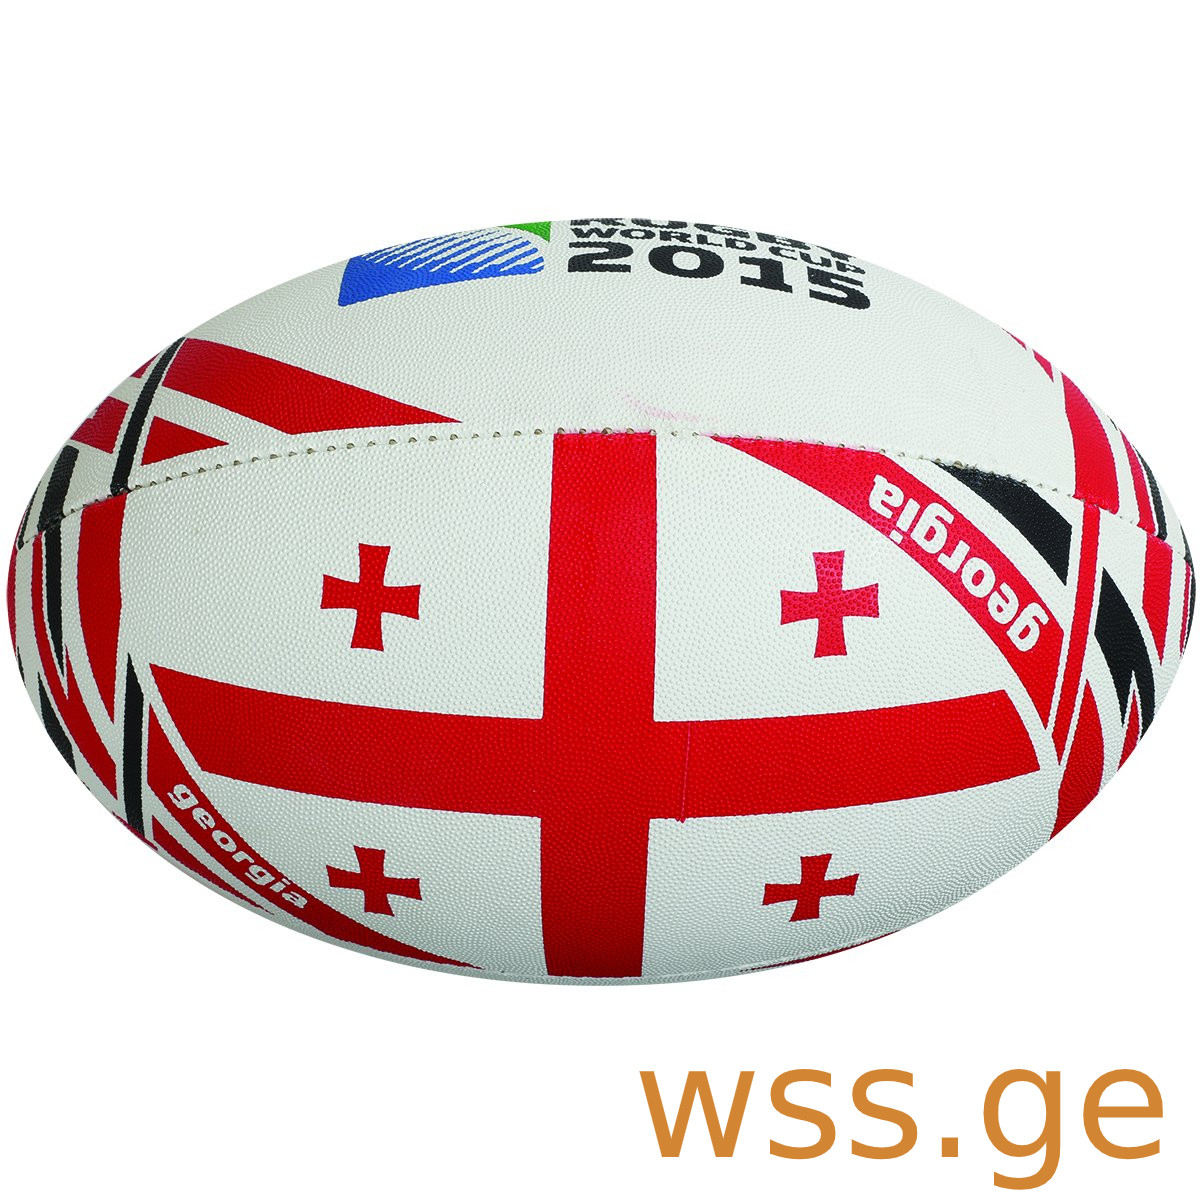 GEORGIA rugby ball.jpg